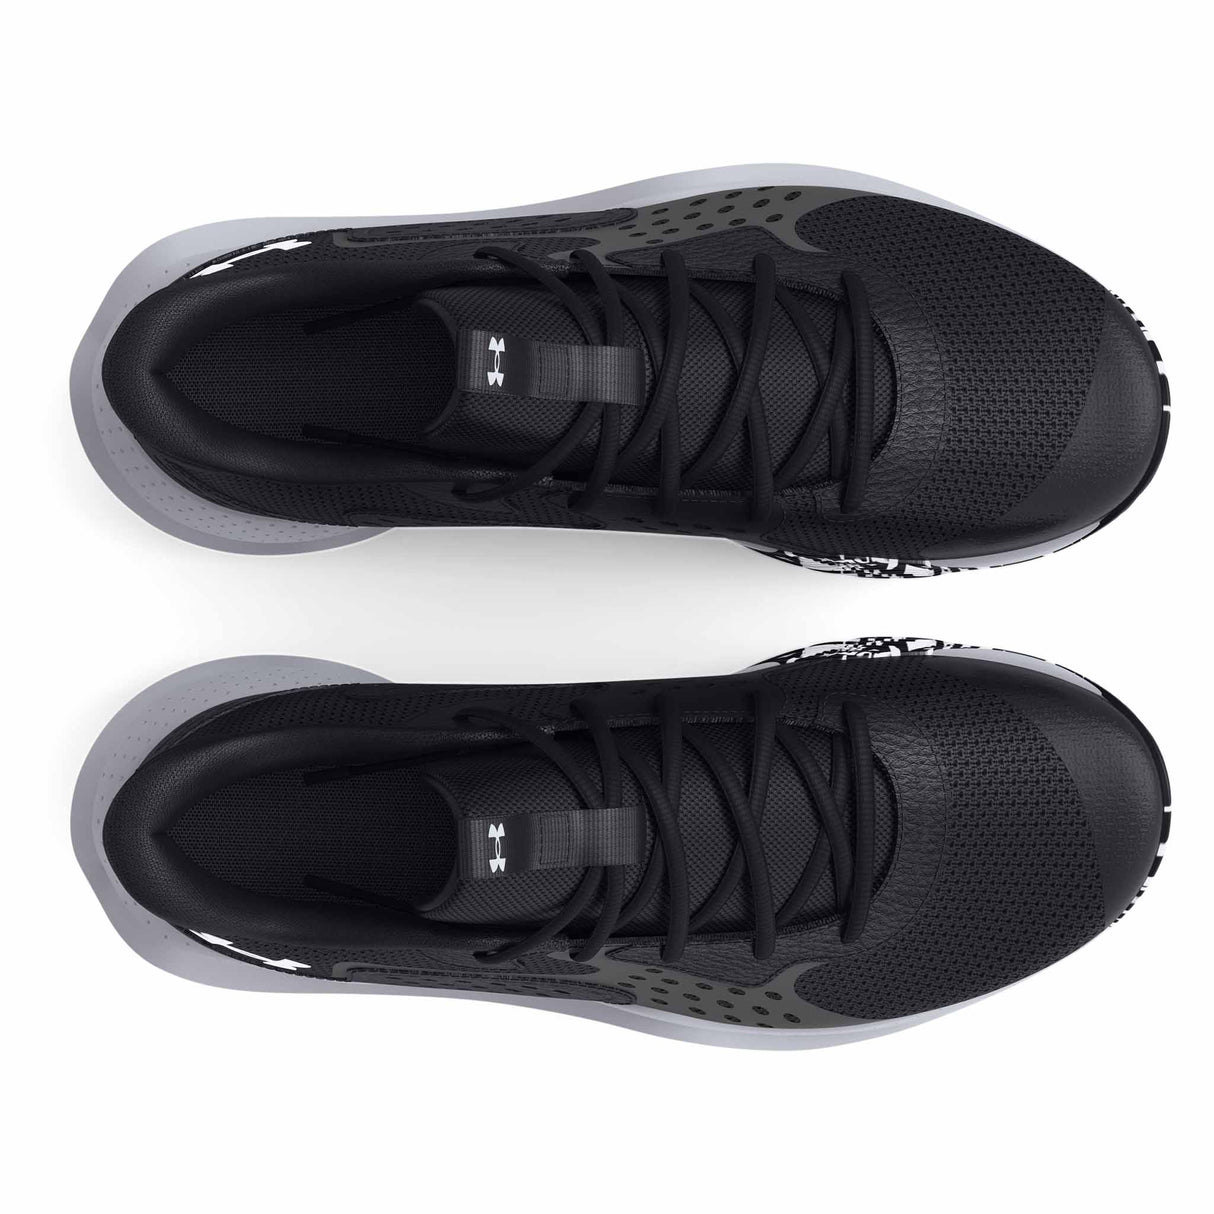 Under Armour Jet 23 chaussures de basketball pour adulte - Black / Jet Grey